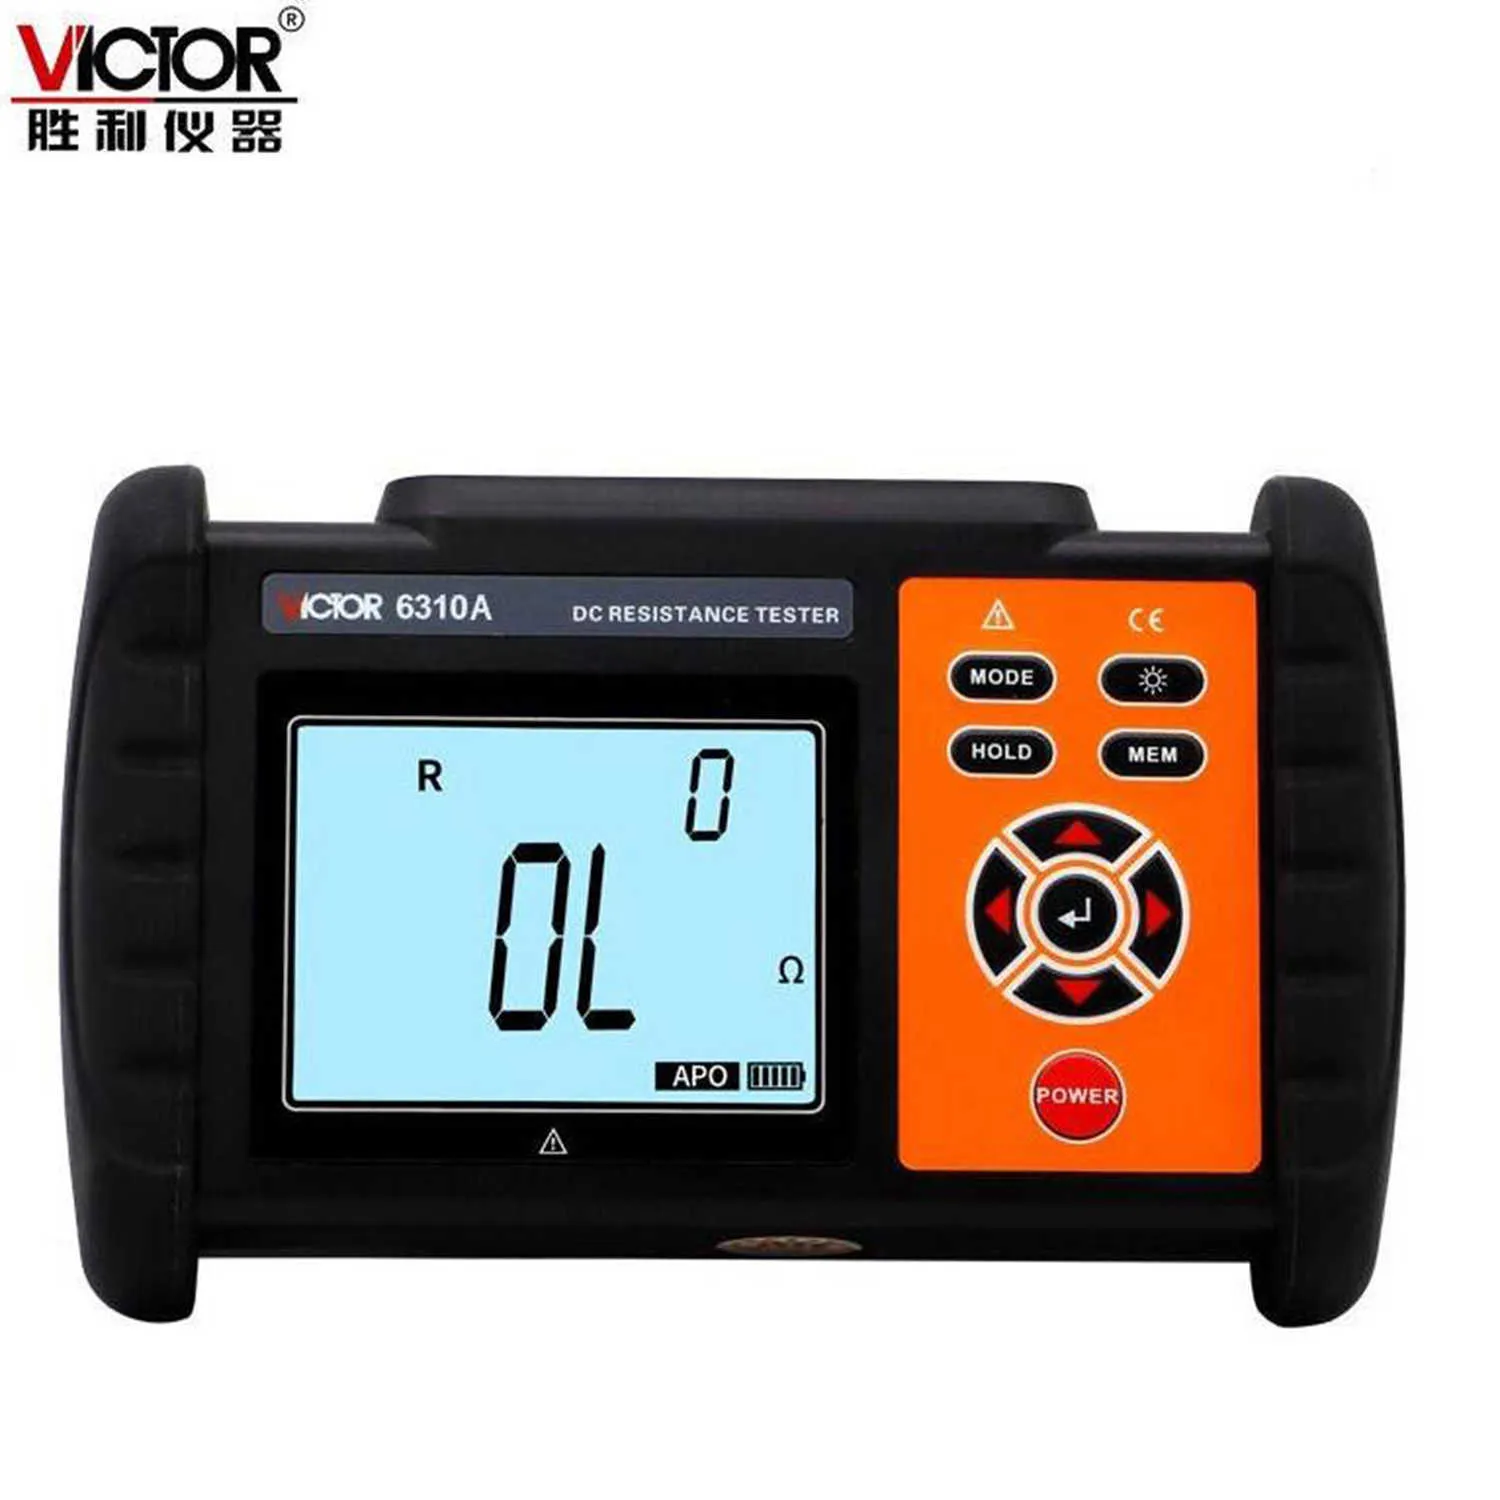 Victor 6310A VC6310A DC TESTANT DE LOBIÈRE LOBILITÉ Micro-ohmmètre OHMMETER LCD Affichage Micro Ohmmètre Test de résistance.